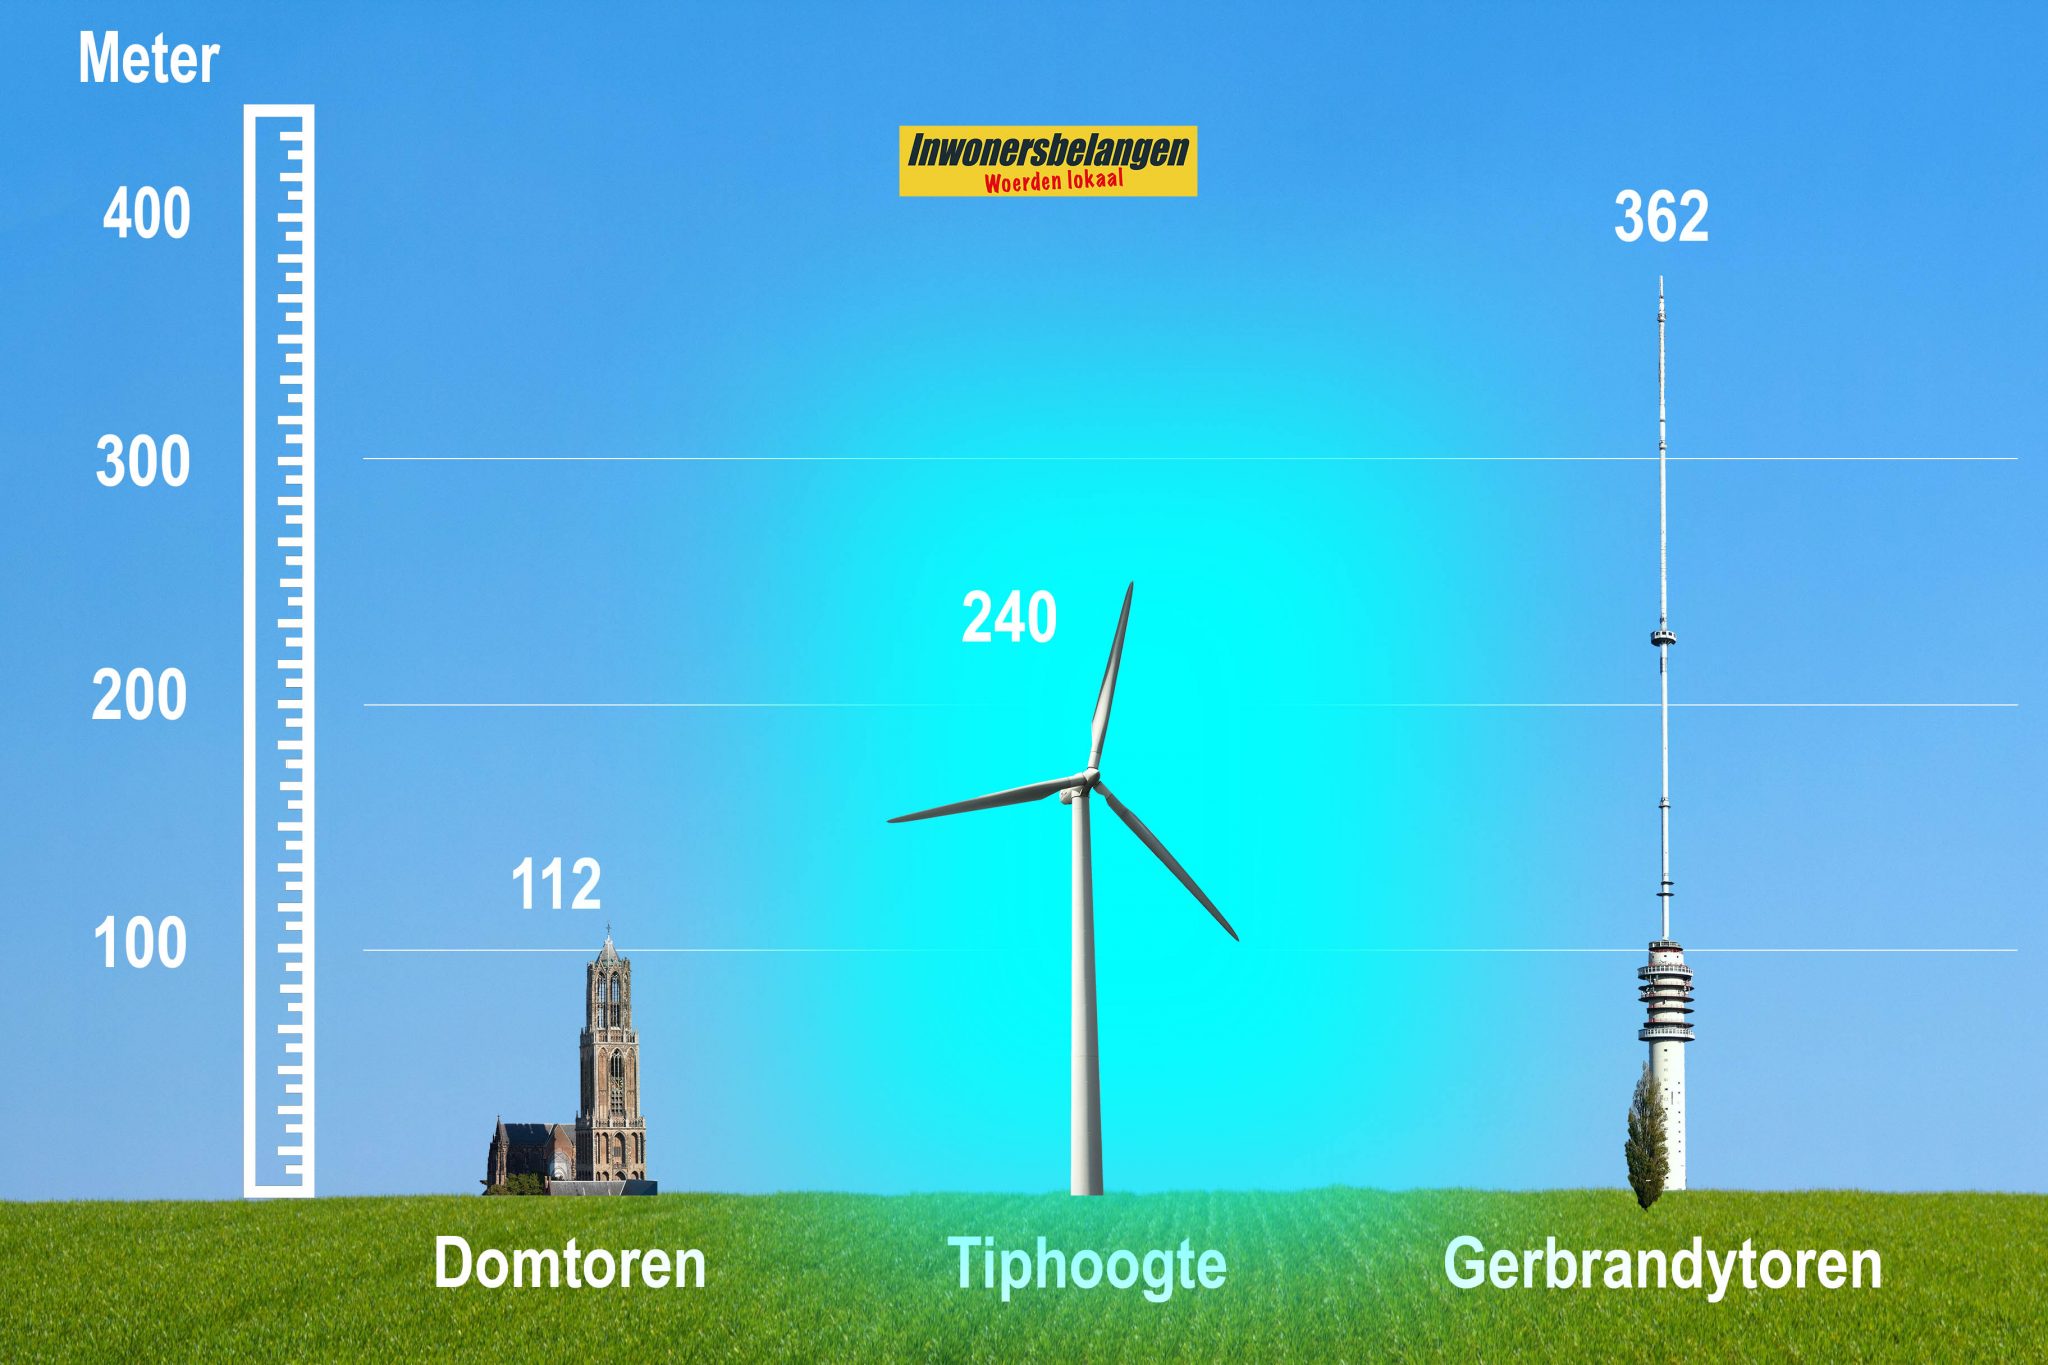 Besluit in juli over 36 windmolens in Woerden